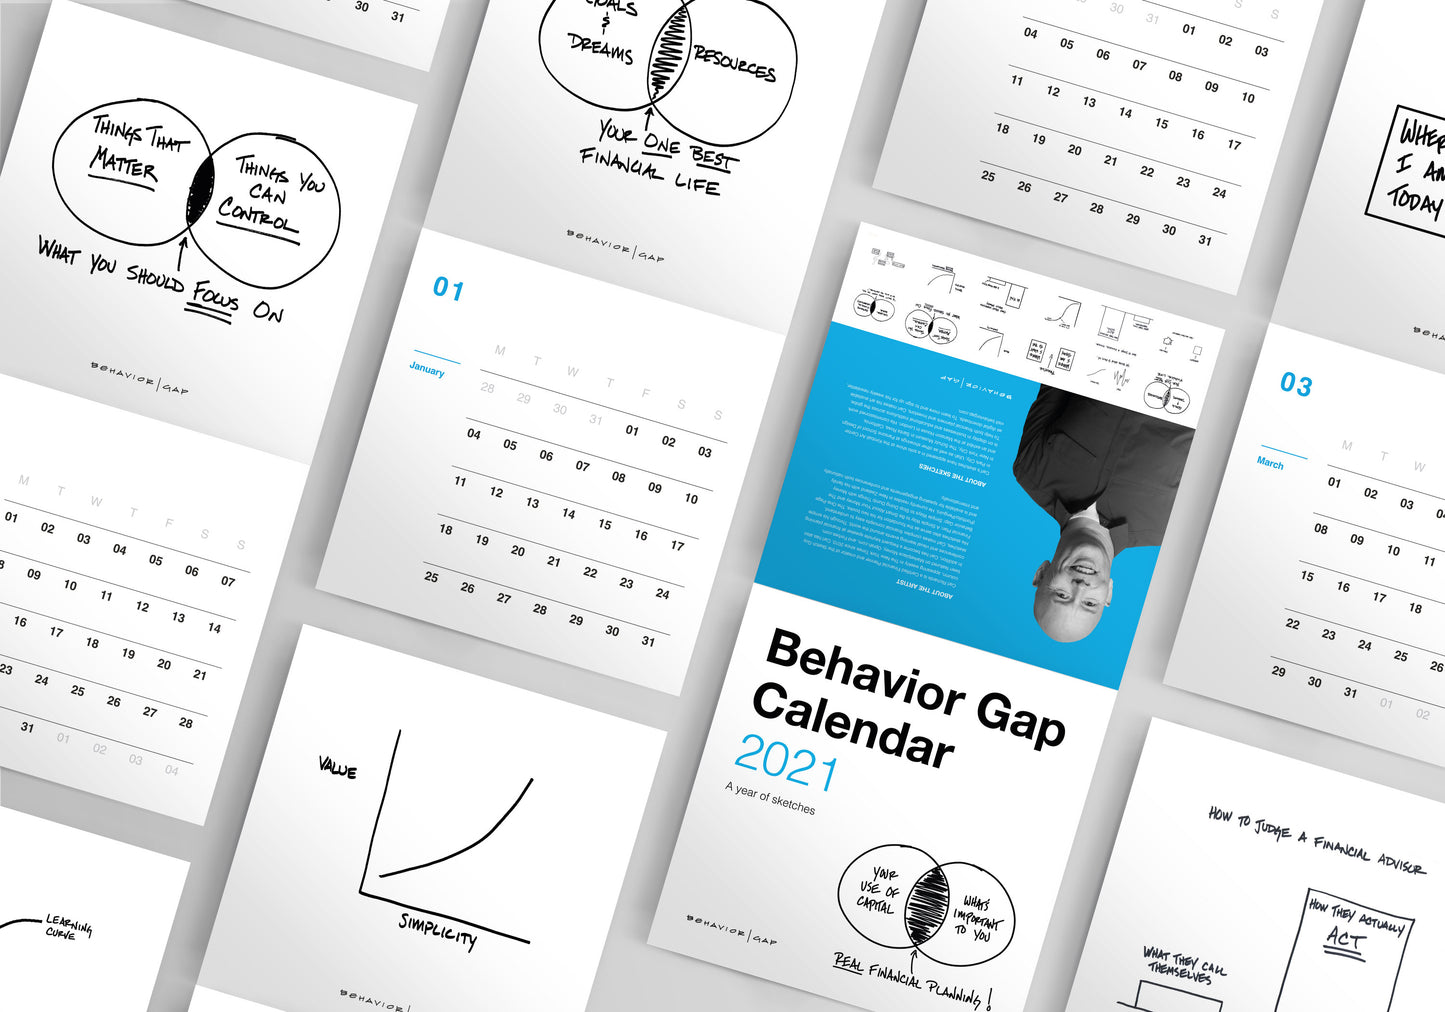 2021 Behavior Gap Calendar